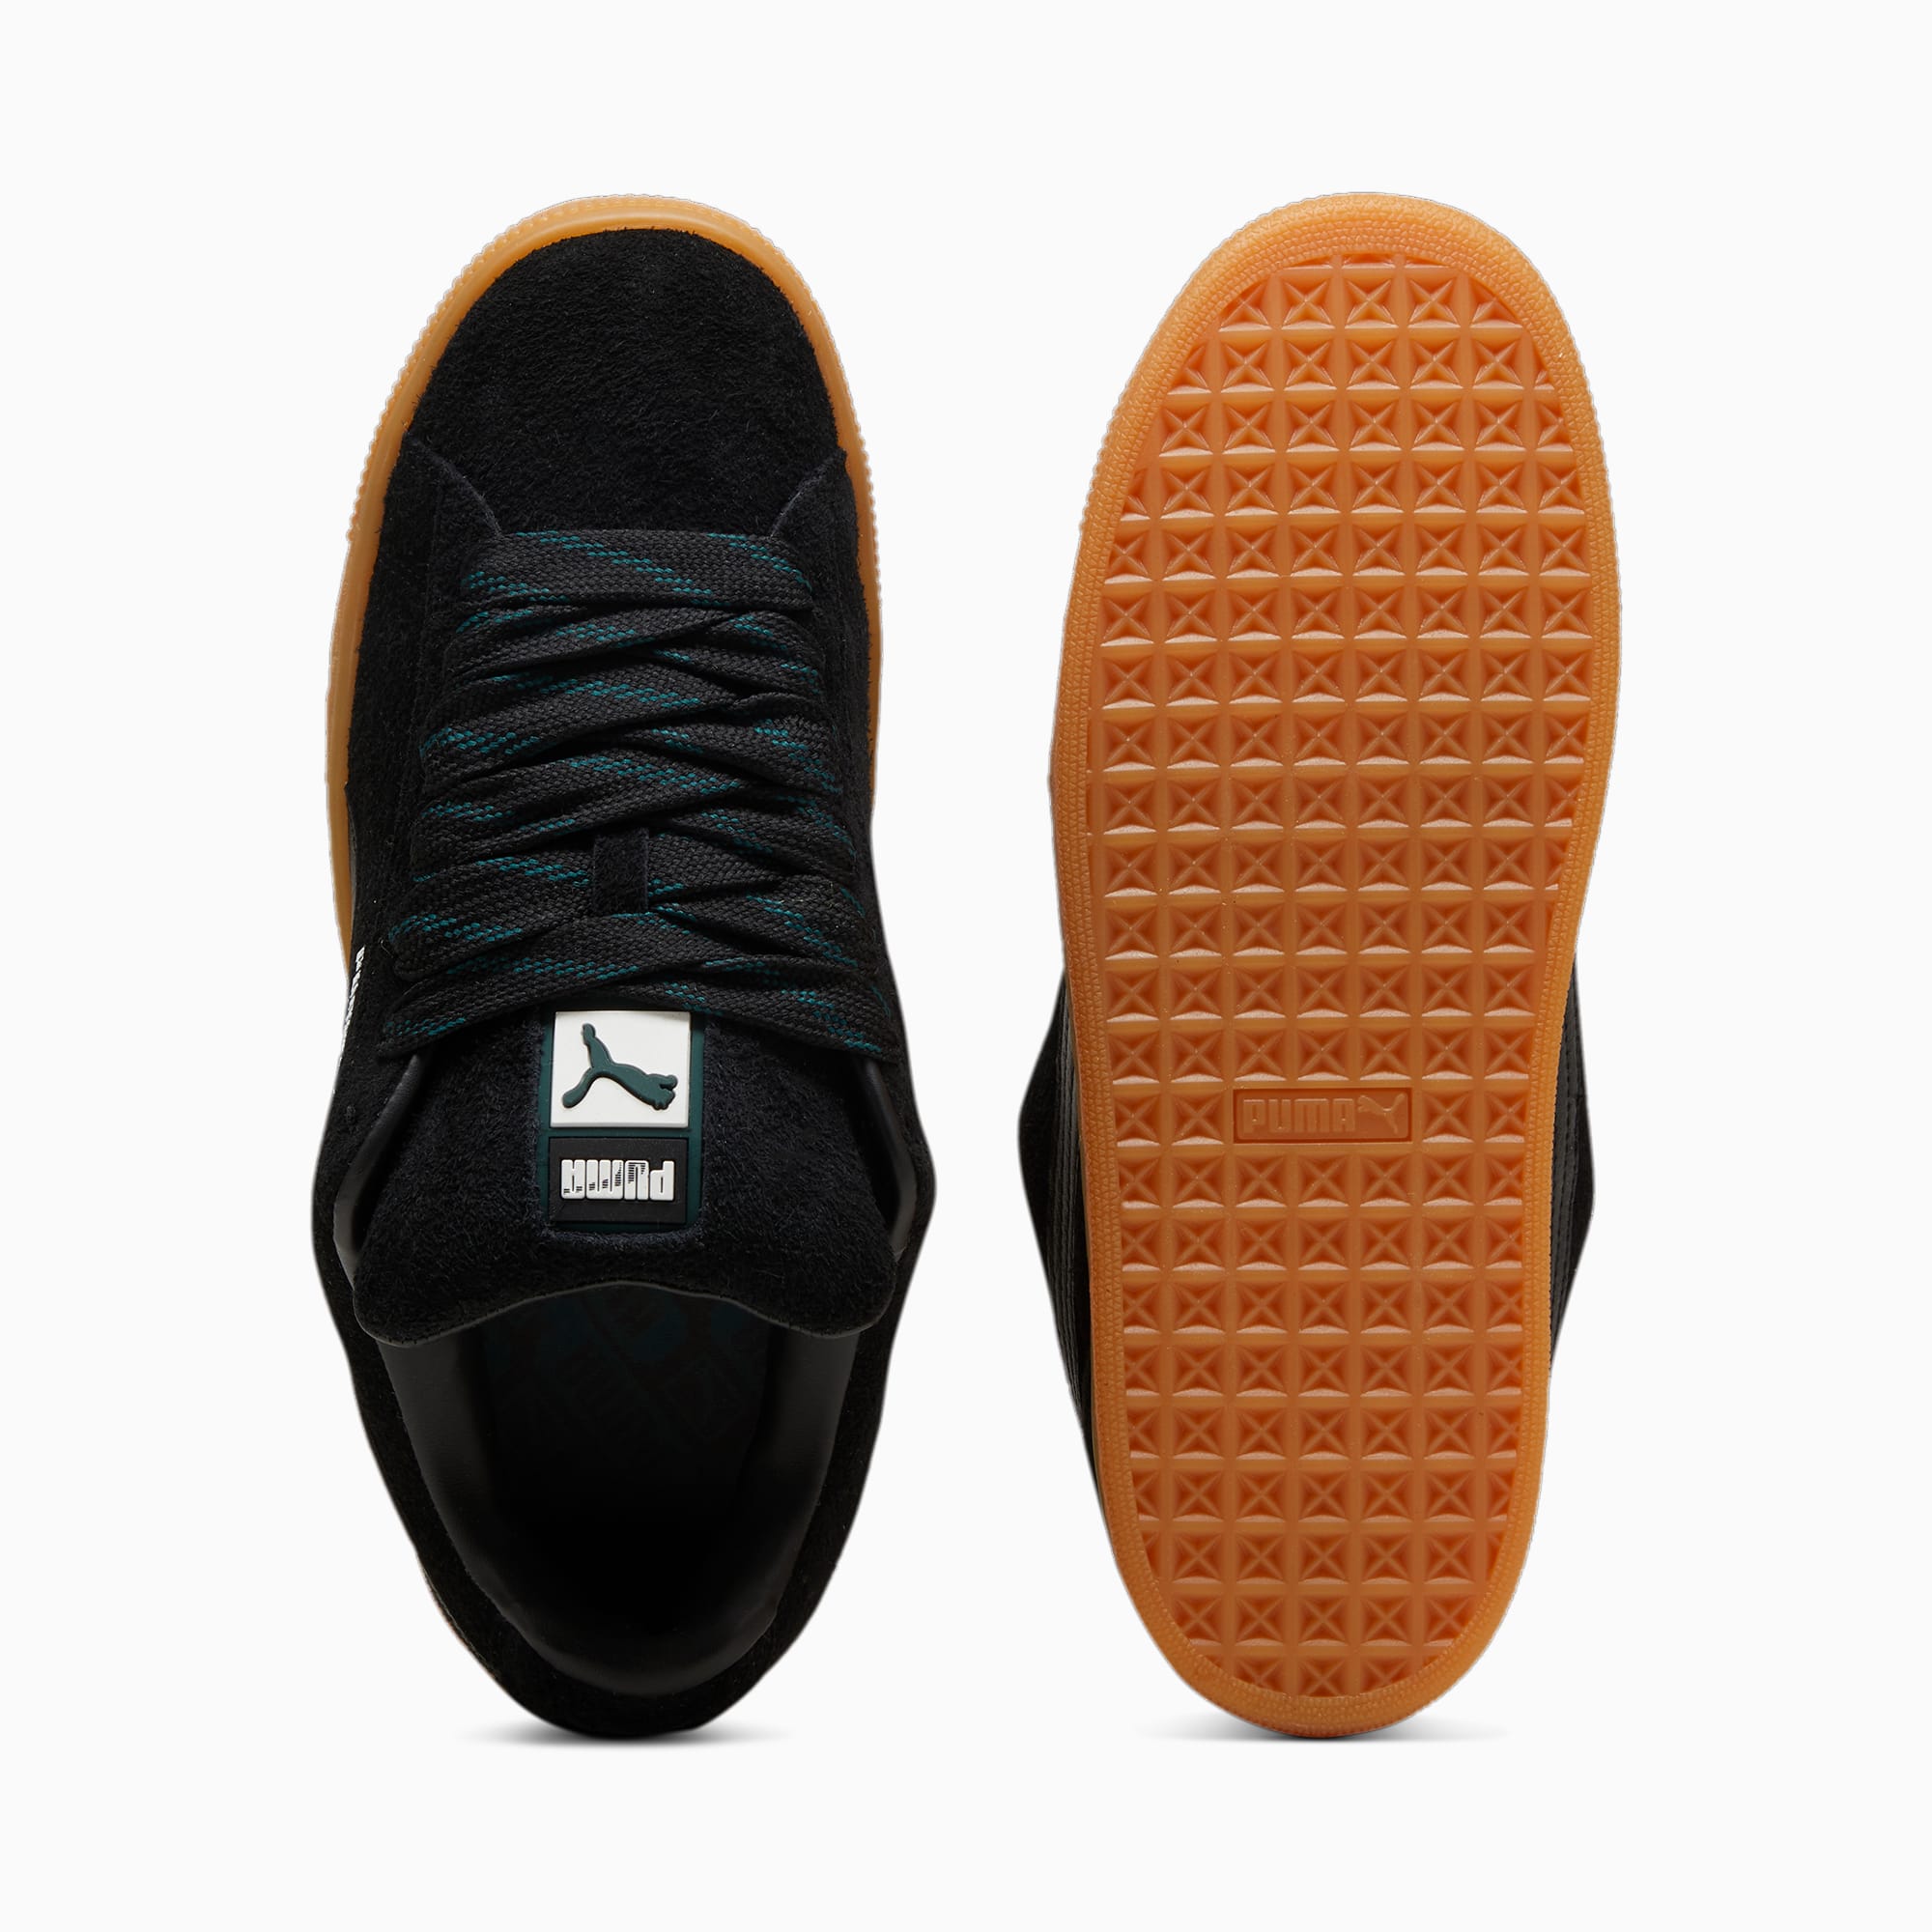 PUMA Suede XL Flecked Sneakers Unisex Schuhe, Schwarz/Grün, Größe: 38, Schuhe